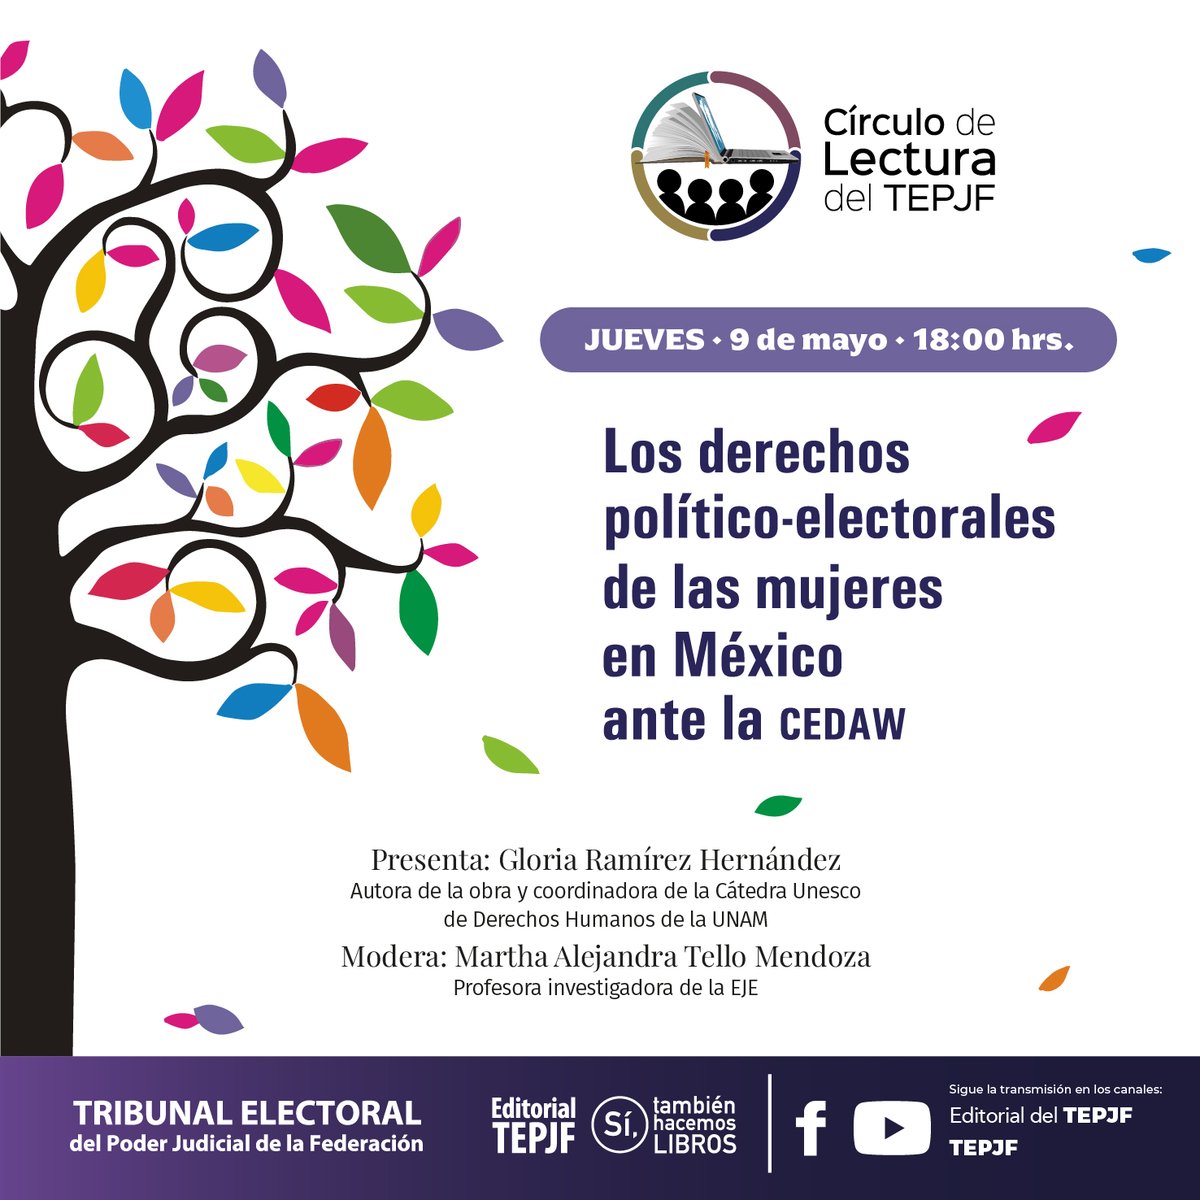 No se pierdan la presentación de la obra de Gabriela Ramírez Hernández  'Los derechos político-electorales de las Mujeres en México ante la CEDAW'.

#HOY en el Círculo de Lectura del #TEPJF.

Transmisión por redes de @EditorialTEPJF.